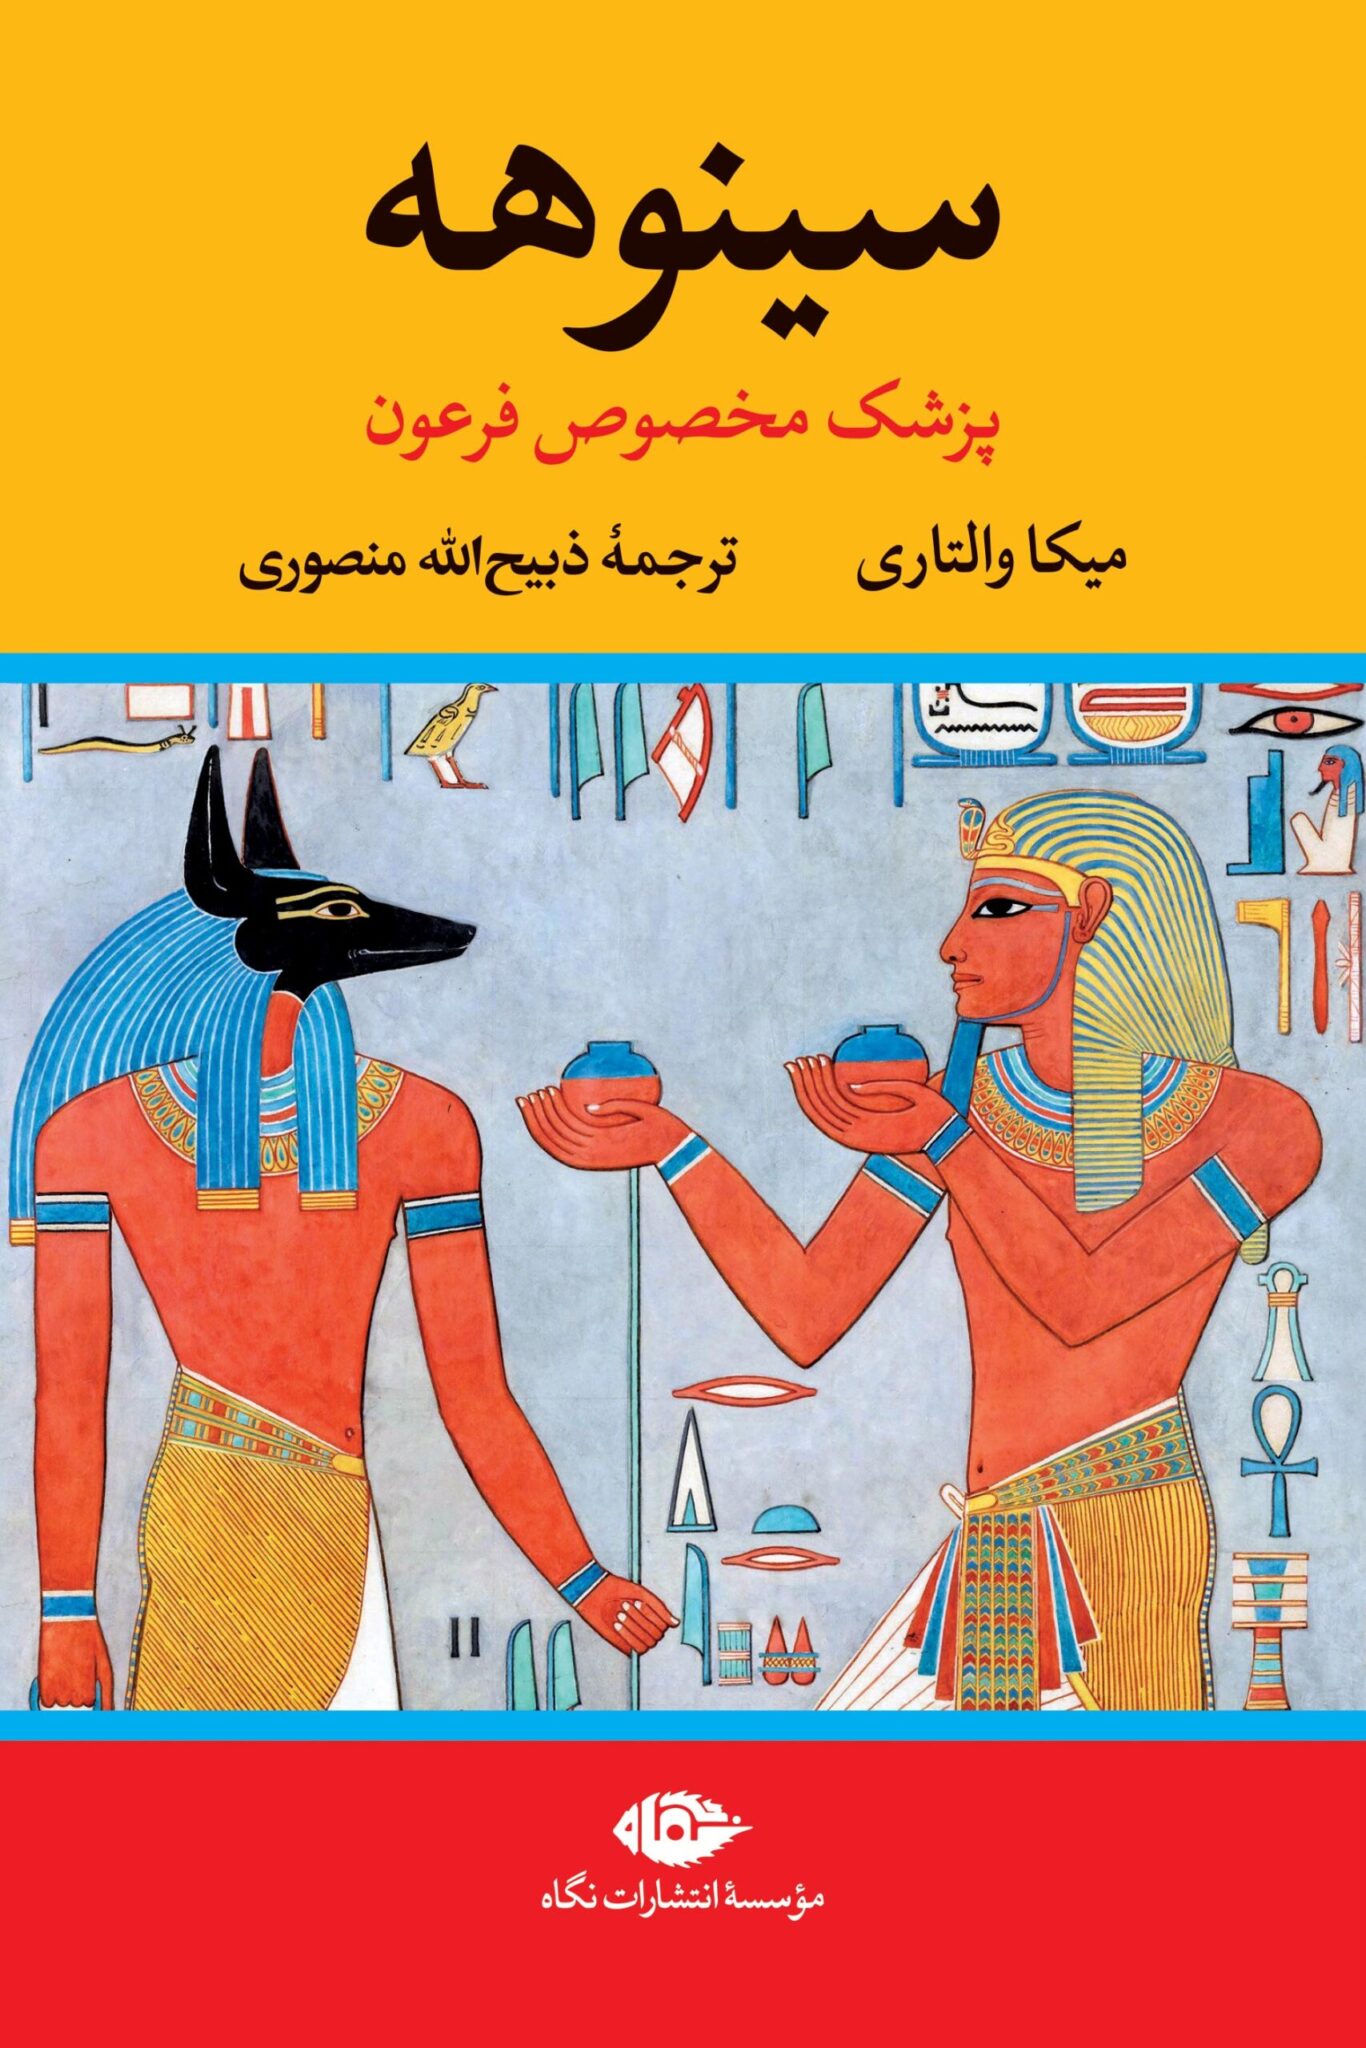 سینوهه پزشک مخصوص فرعون میکا والتاری(نگاه)